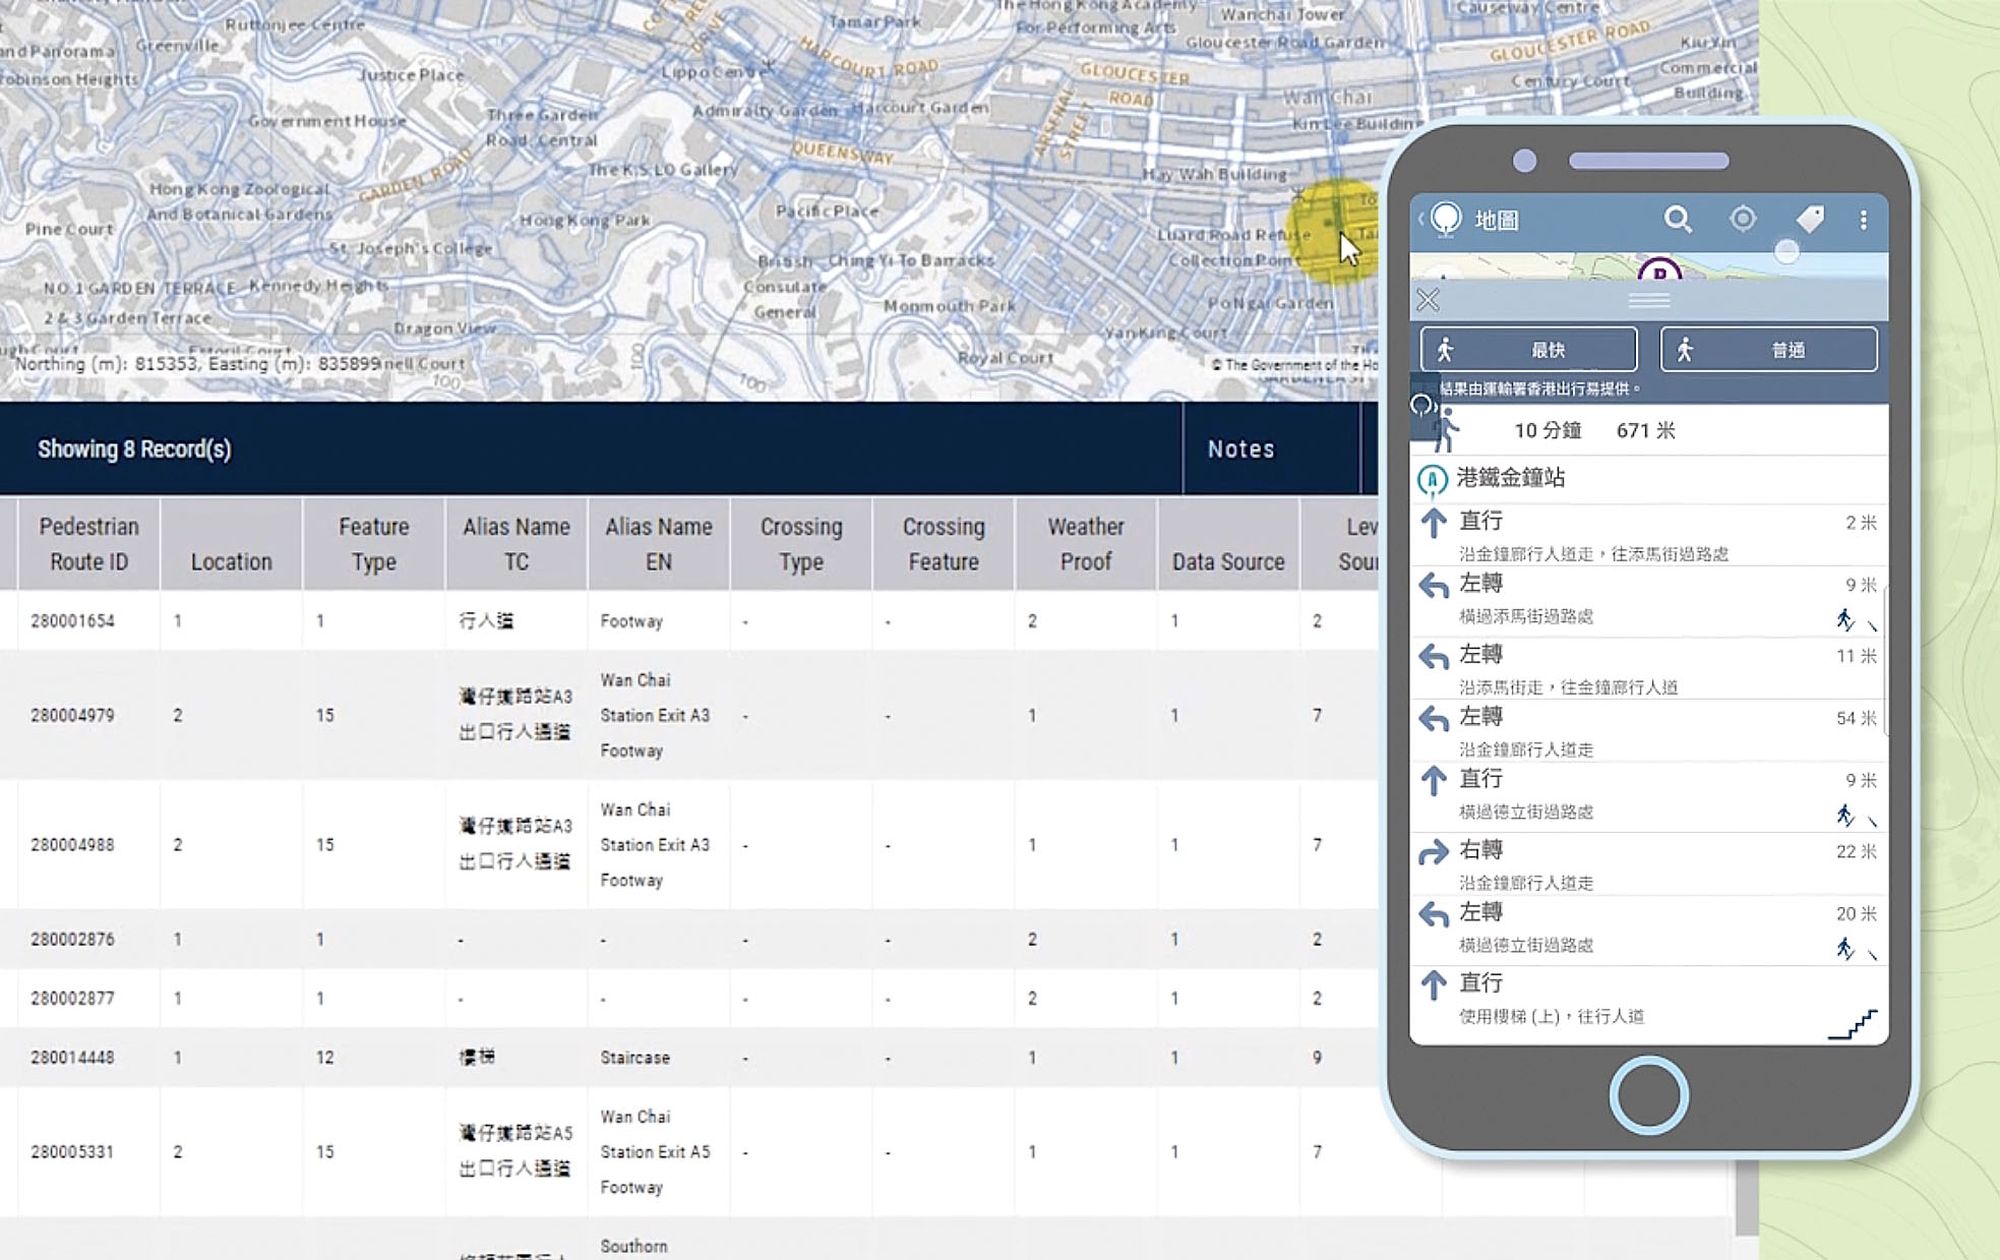 地政总署的「MyMapHK」流动地图应用程序，向公众提供三维行人道路网络线搜寻功能。